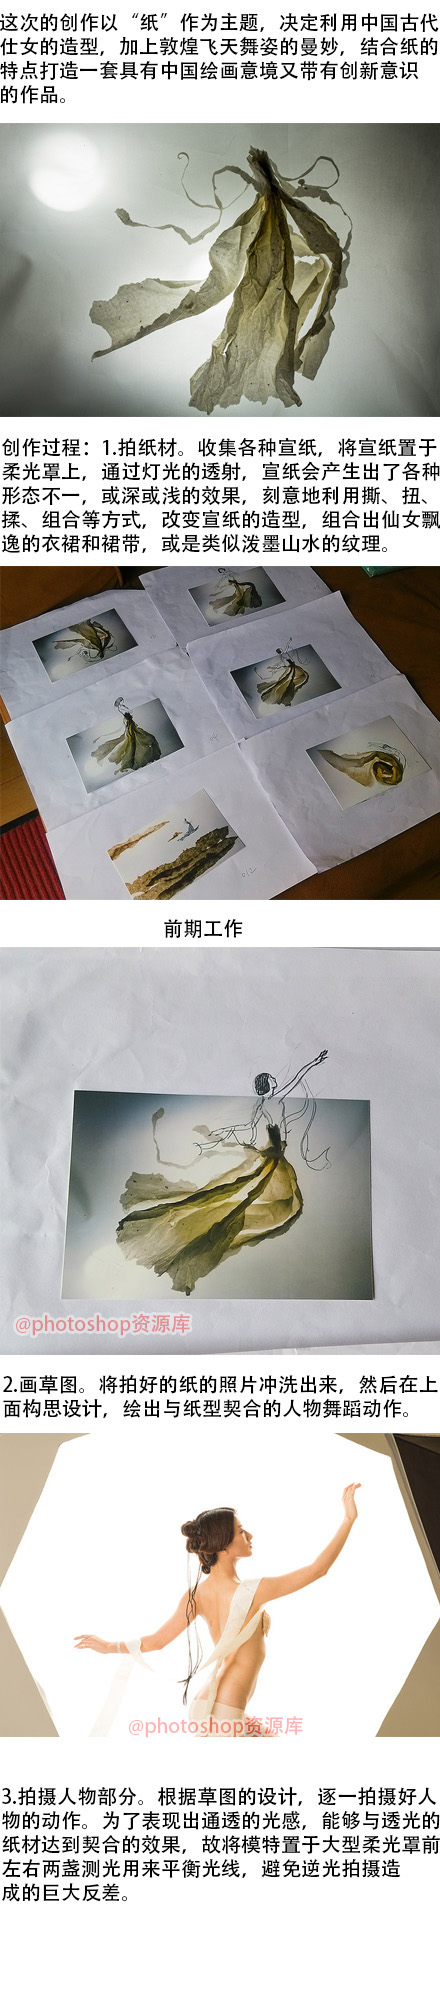 将“墨”和“笔”结合摄影去打造新式中国风创意人像作品